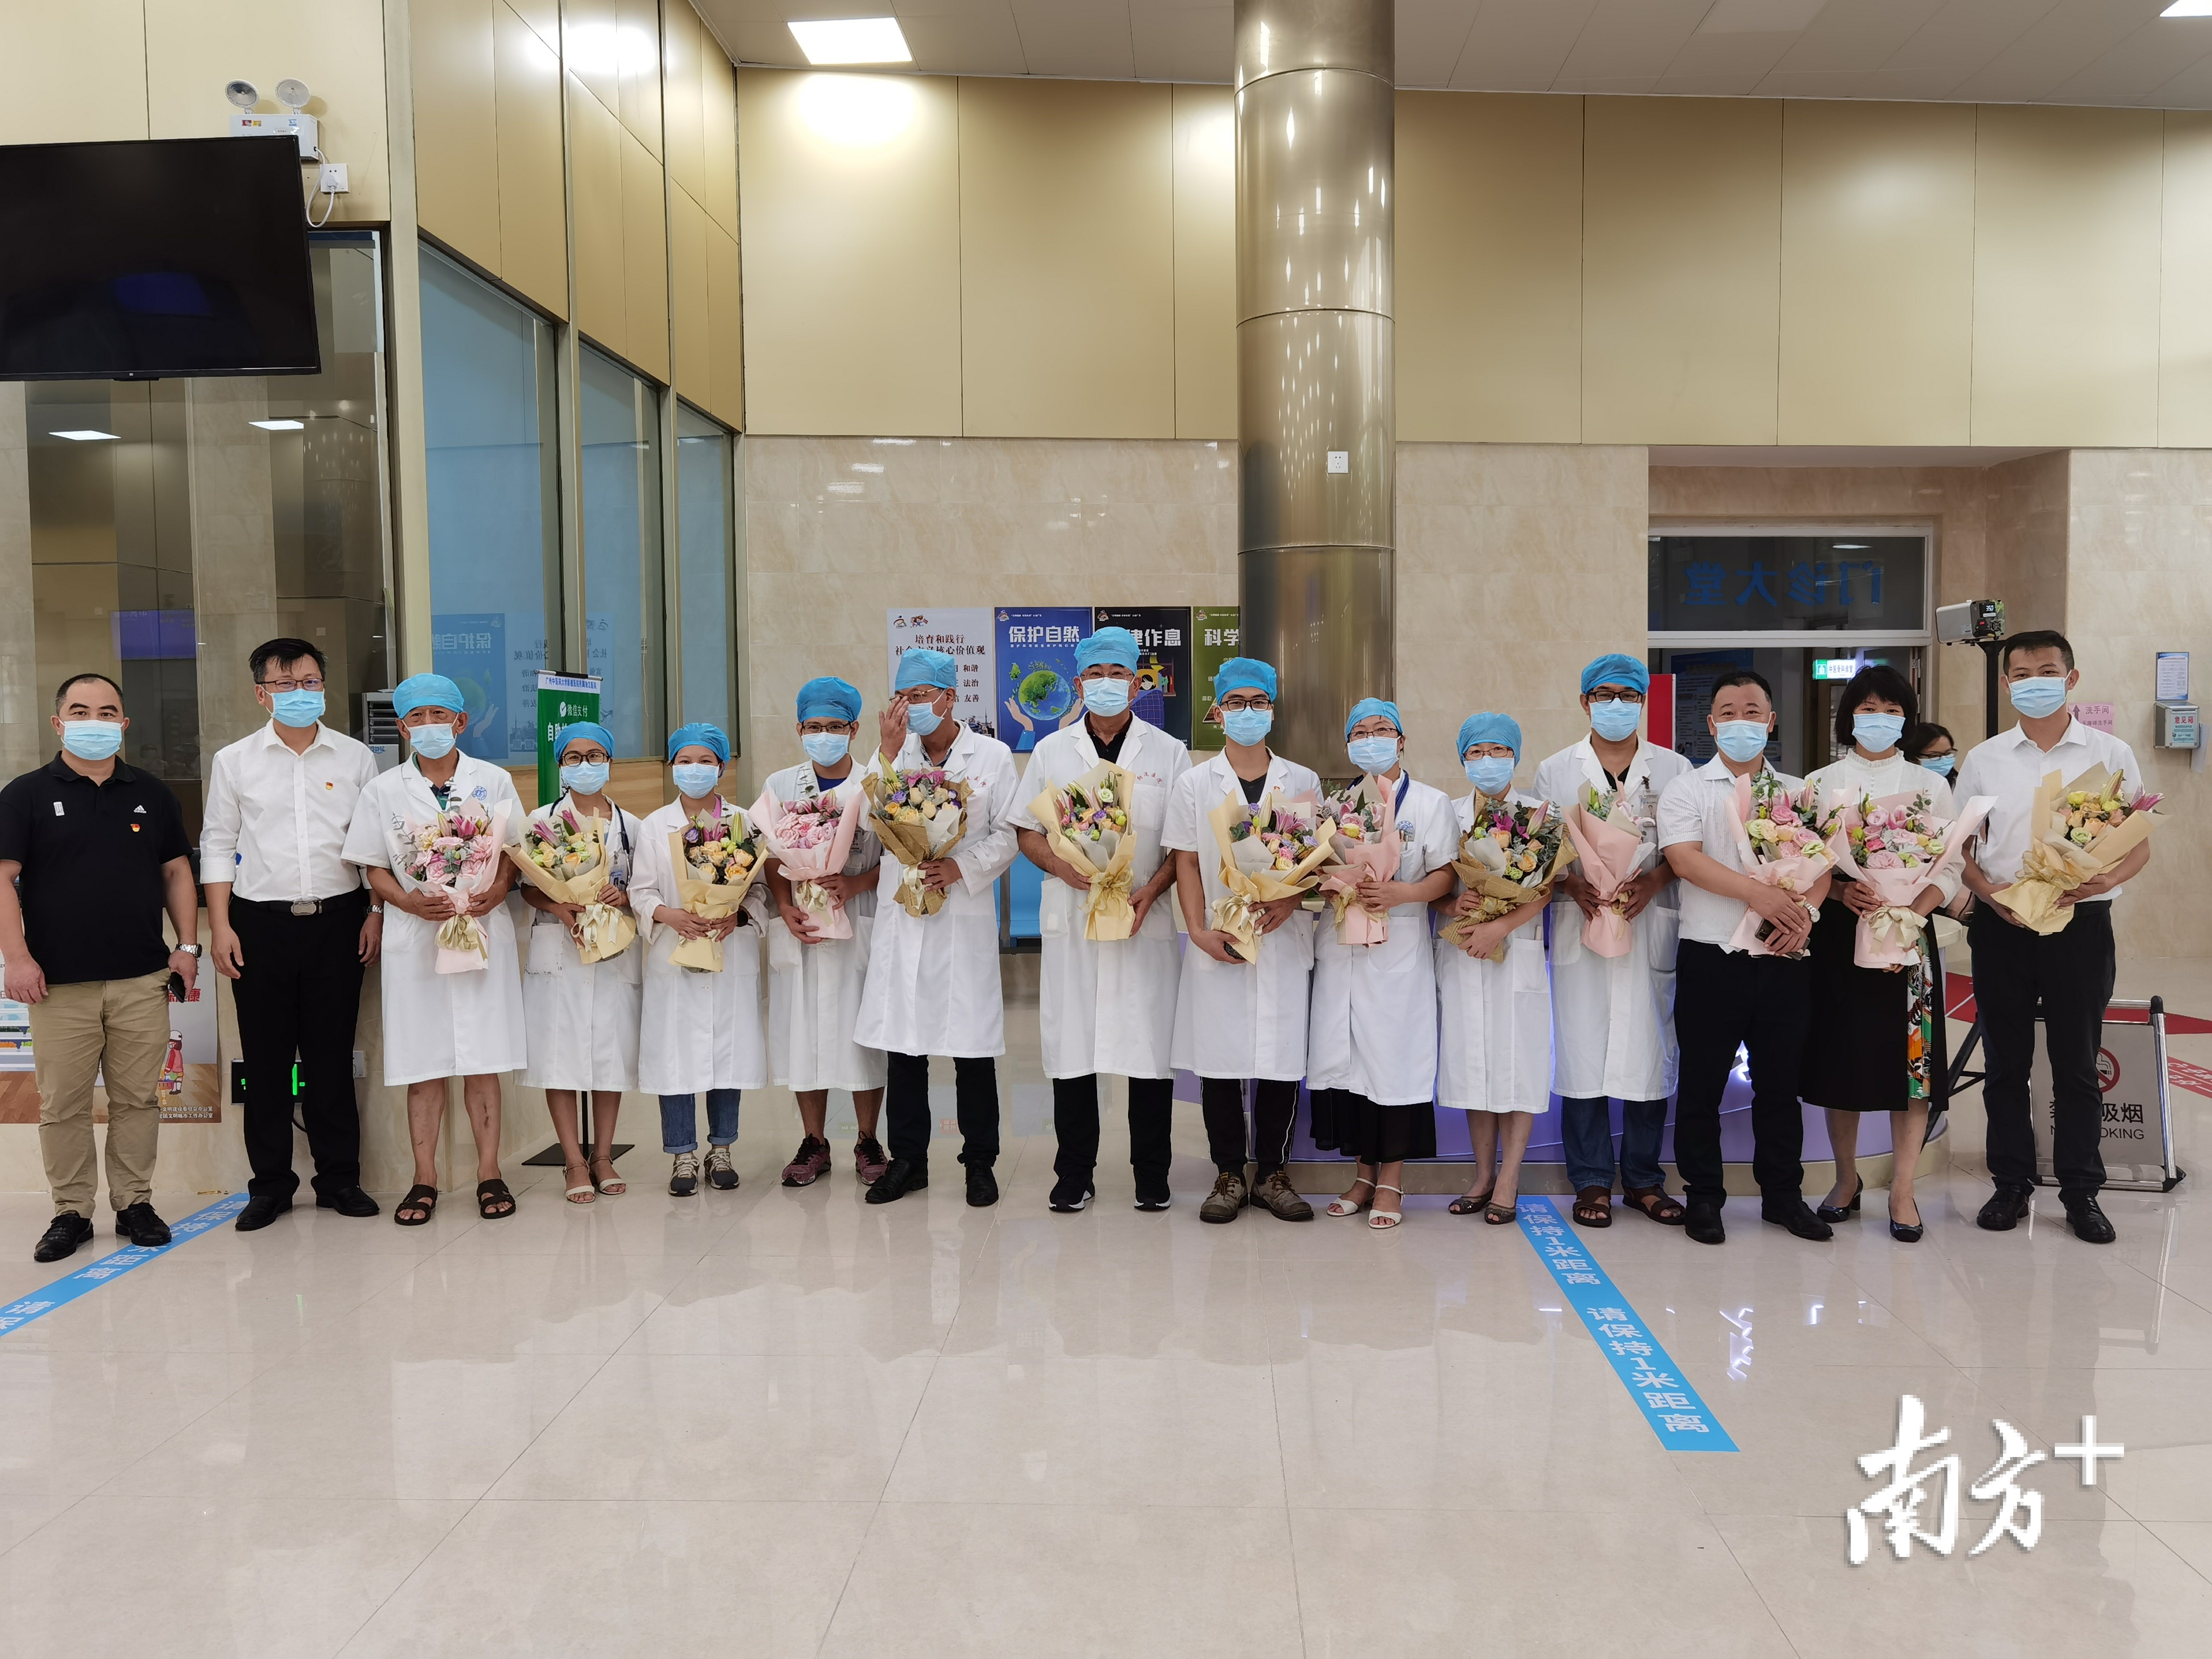 顺德区副区长、区卫健局局长招霞红为顺德疾控中心12科室代表送上鲜花与节日祝福。